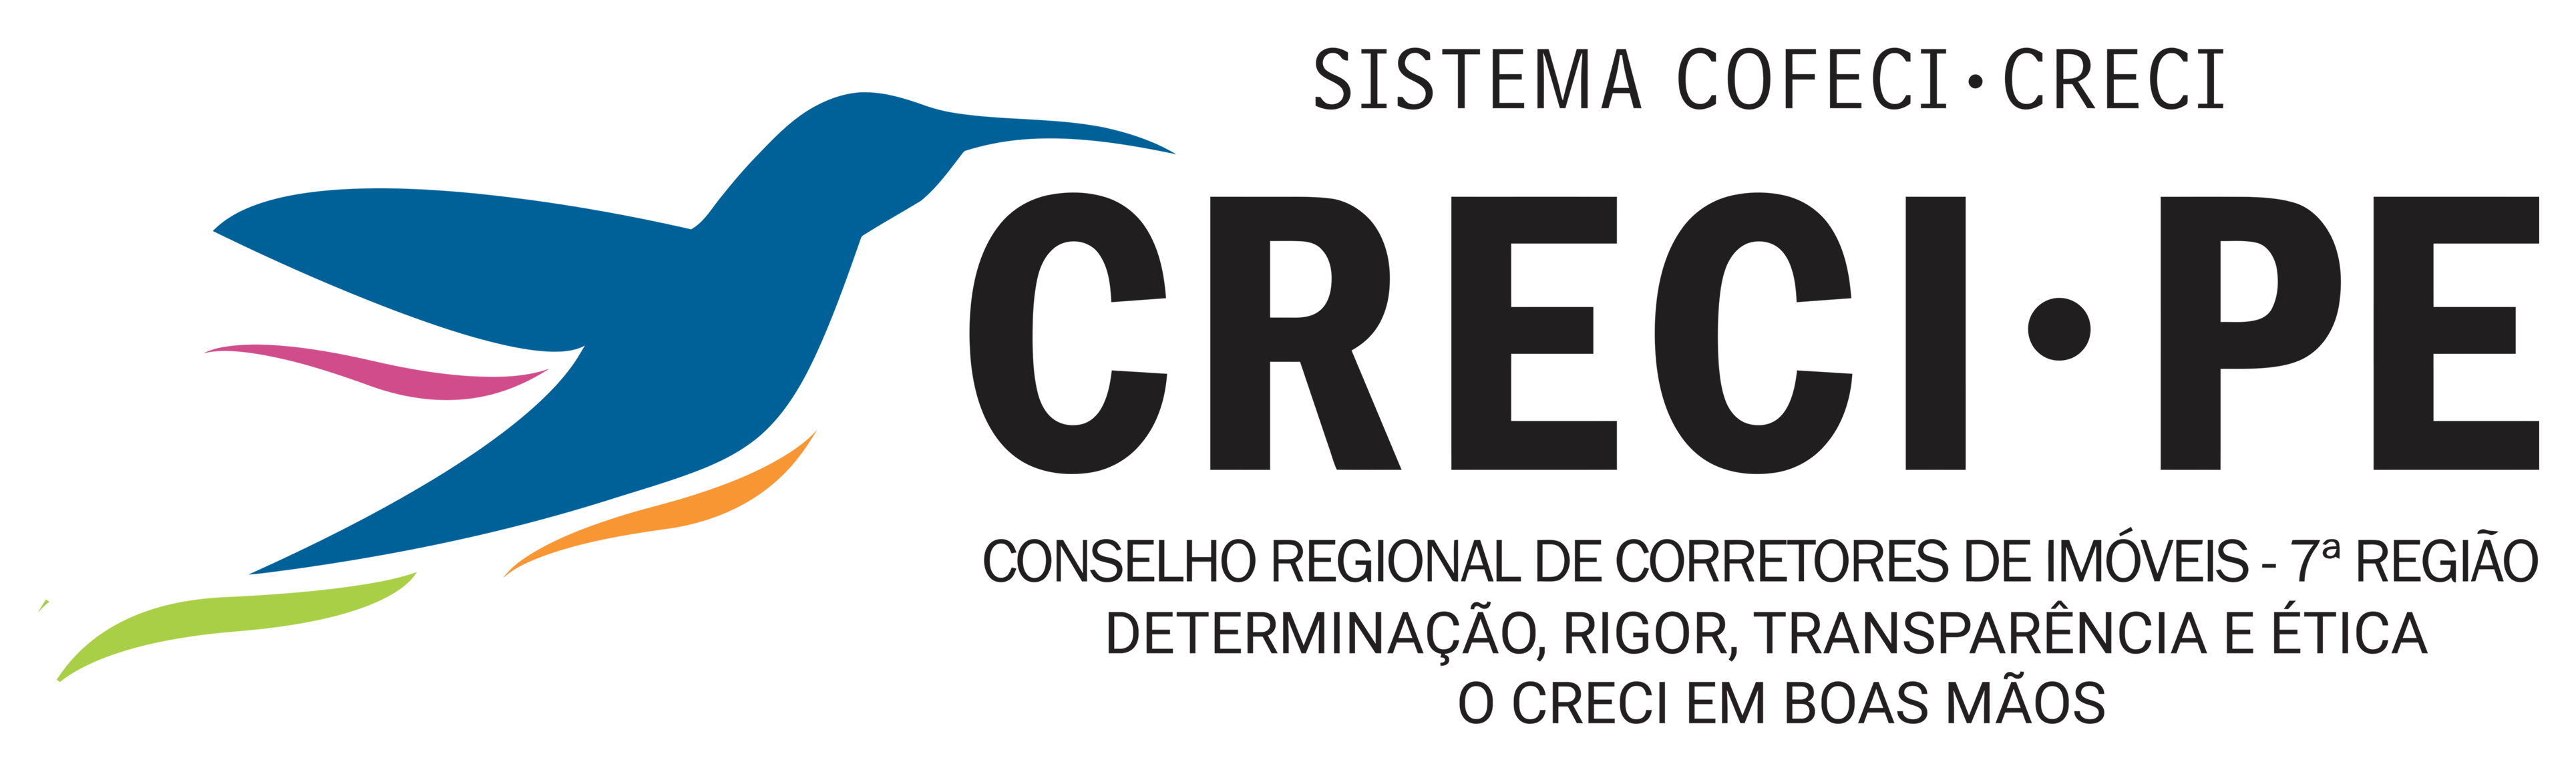 CRECI 7 - Conselho Regional dos Corretores de Imóveis da 7ª Região (Pernambuco)